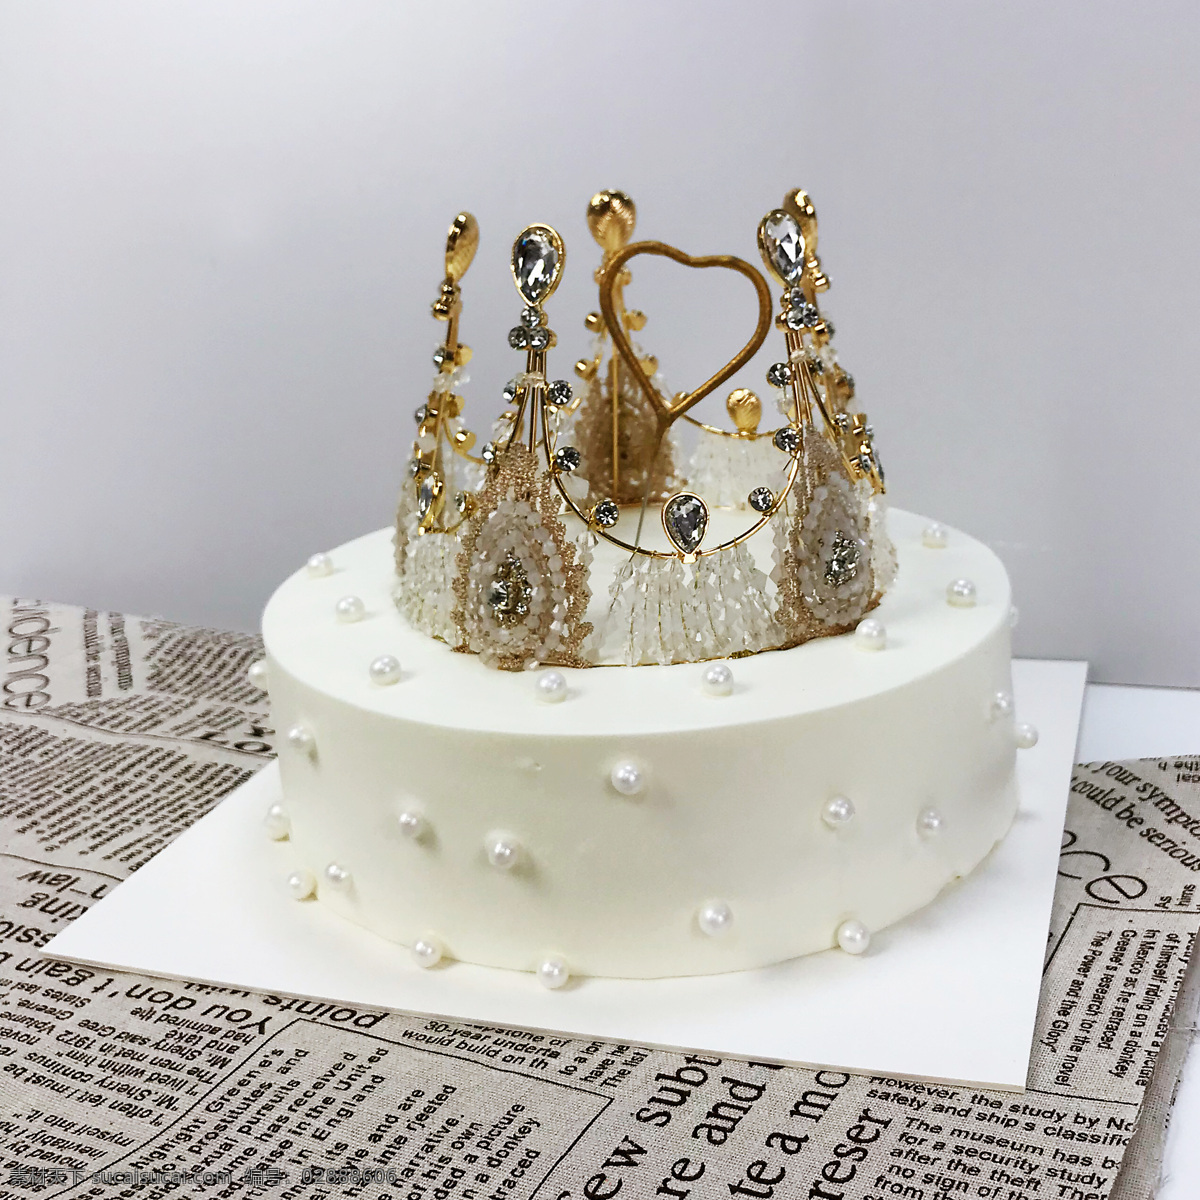 皇冠蛋糕 蛋糕 生日蛋糕 烘焙 女王 公主 食物摄影 餐饮美食 西餐美食